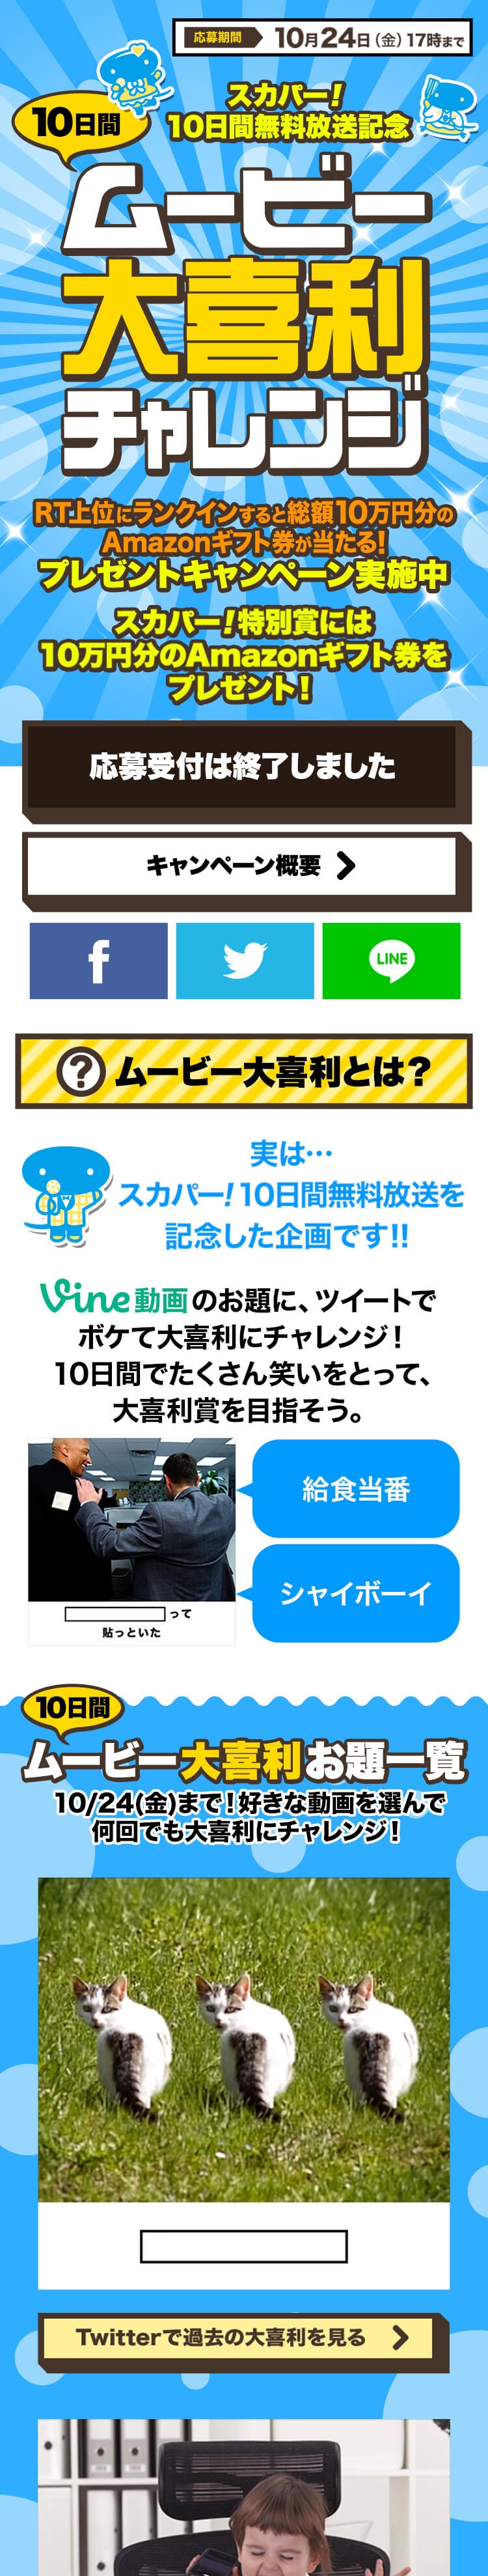 スカパー 事例 Vineのお題にボケよう 10日間ムービー大喜利チャレンジ Webマーケティング 株式会社ピクルス